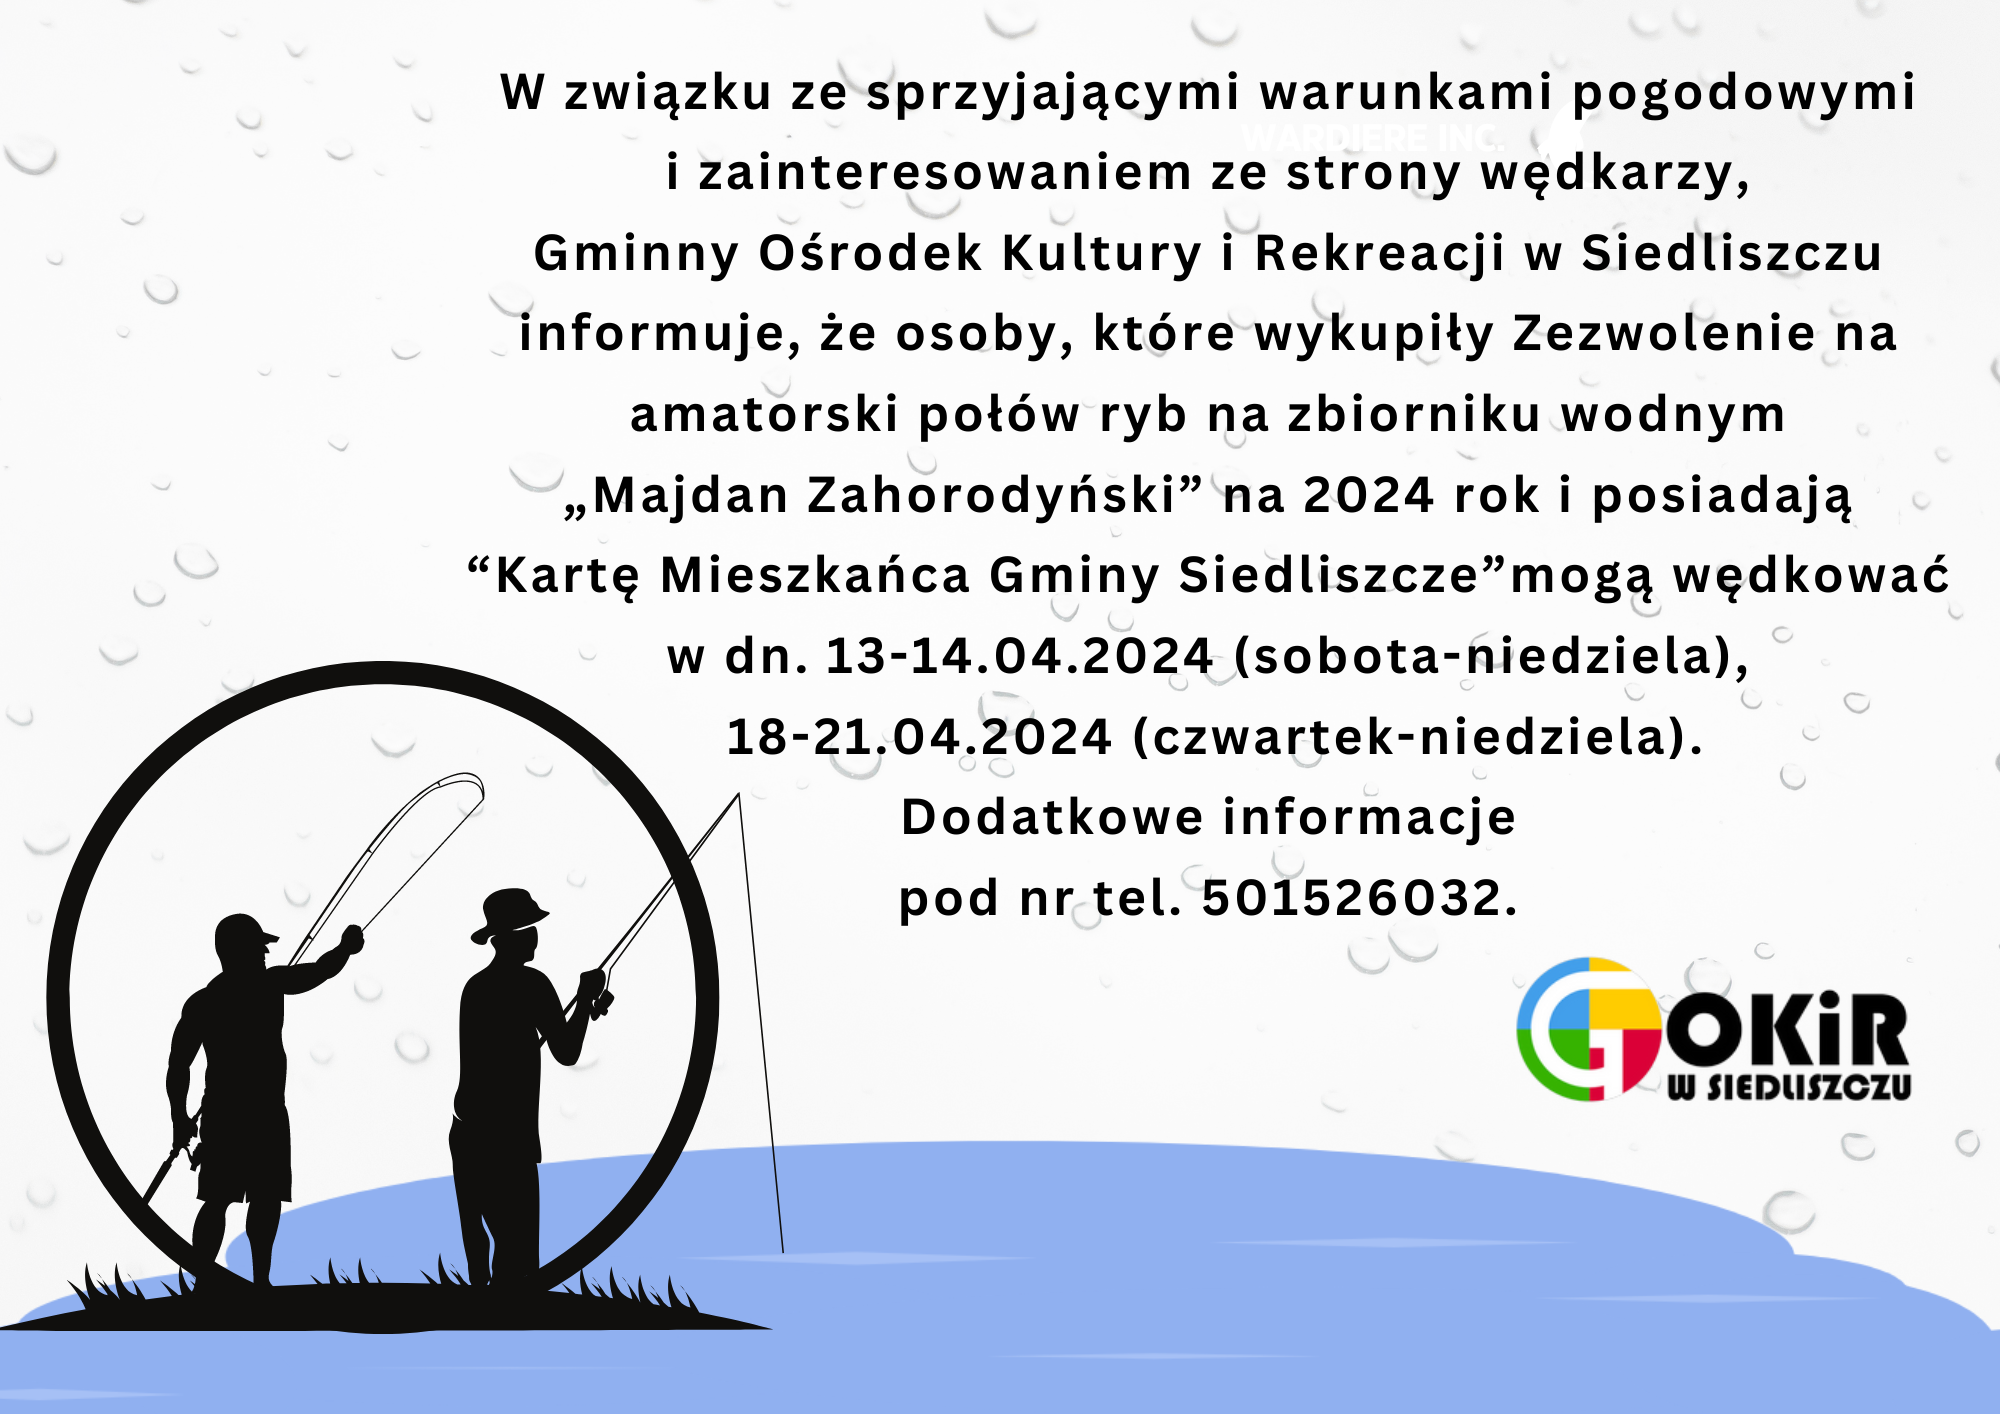 Połów ryb na zbiorniku w „Majdanie Zahorodyńskim” w dn. 13-14.04 oraz 18-21.04.2024